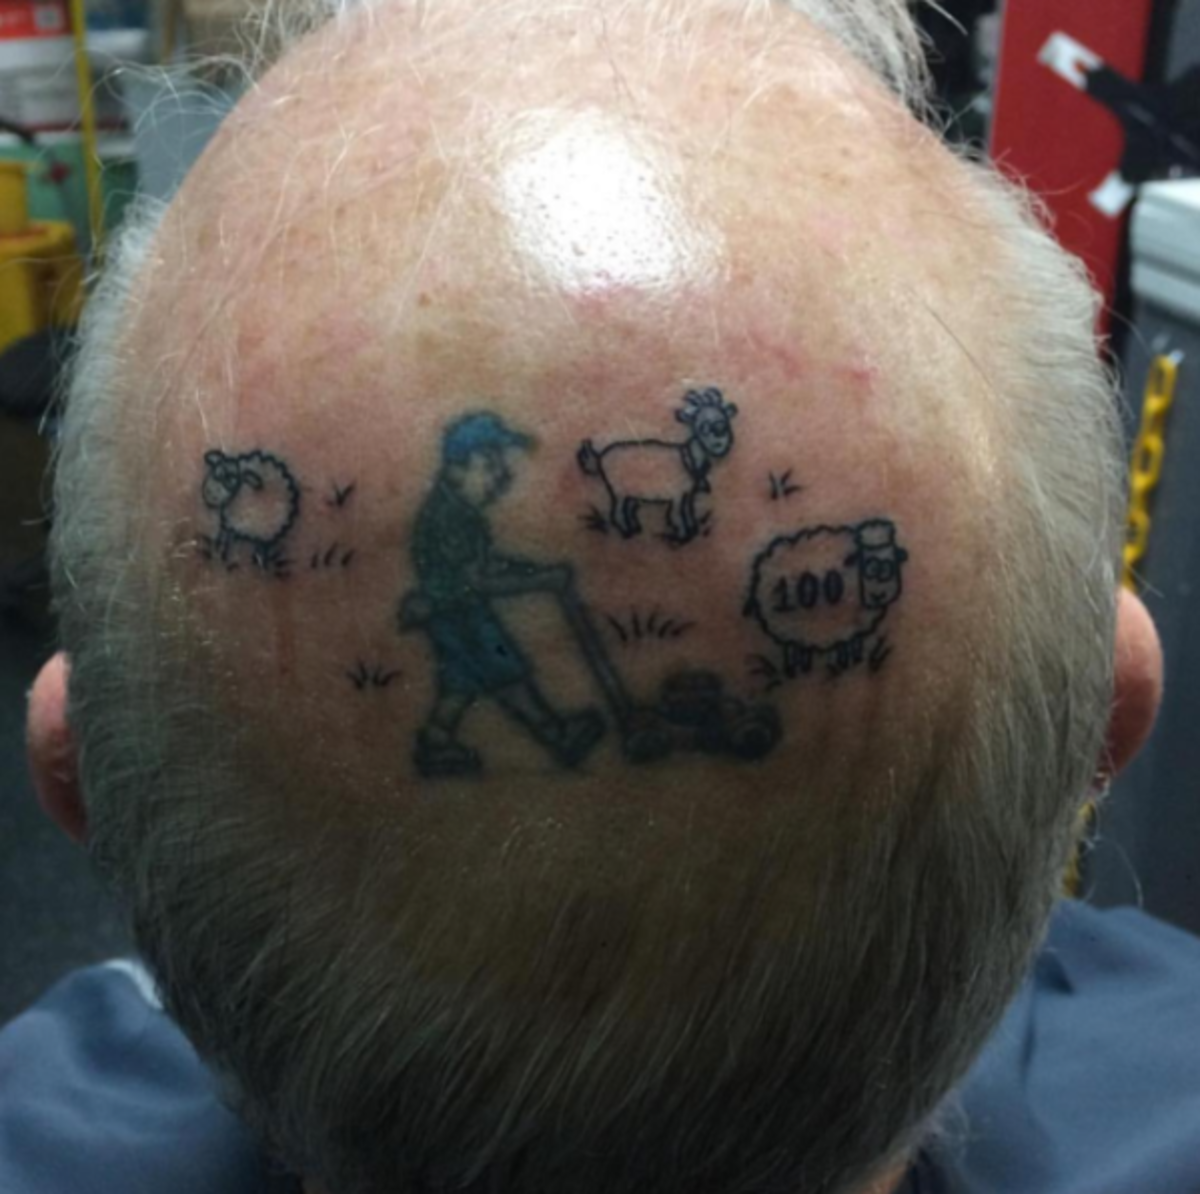 kalju mies tatuoinnilla päässään